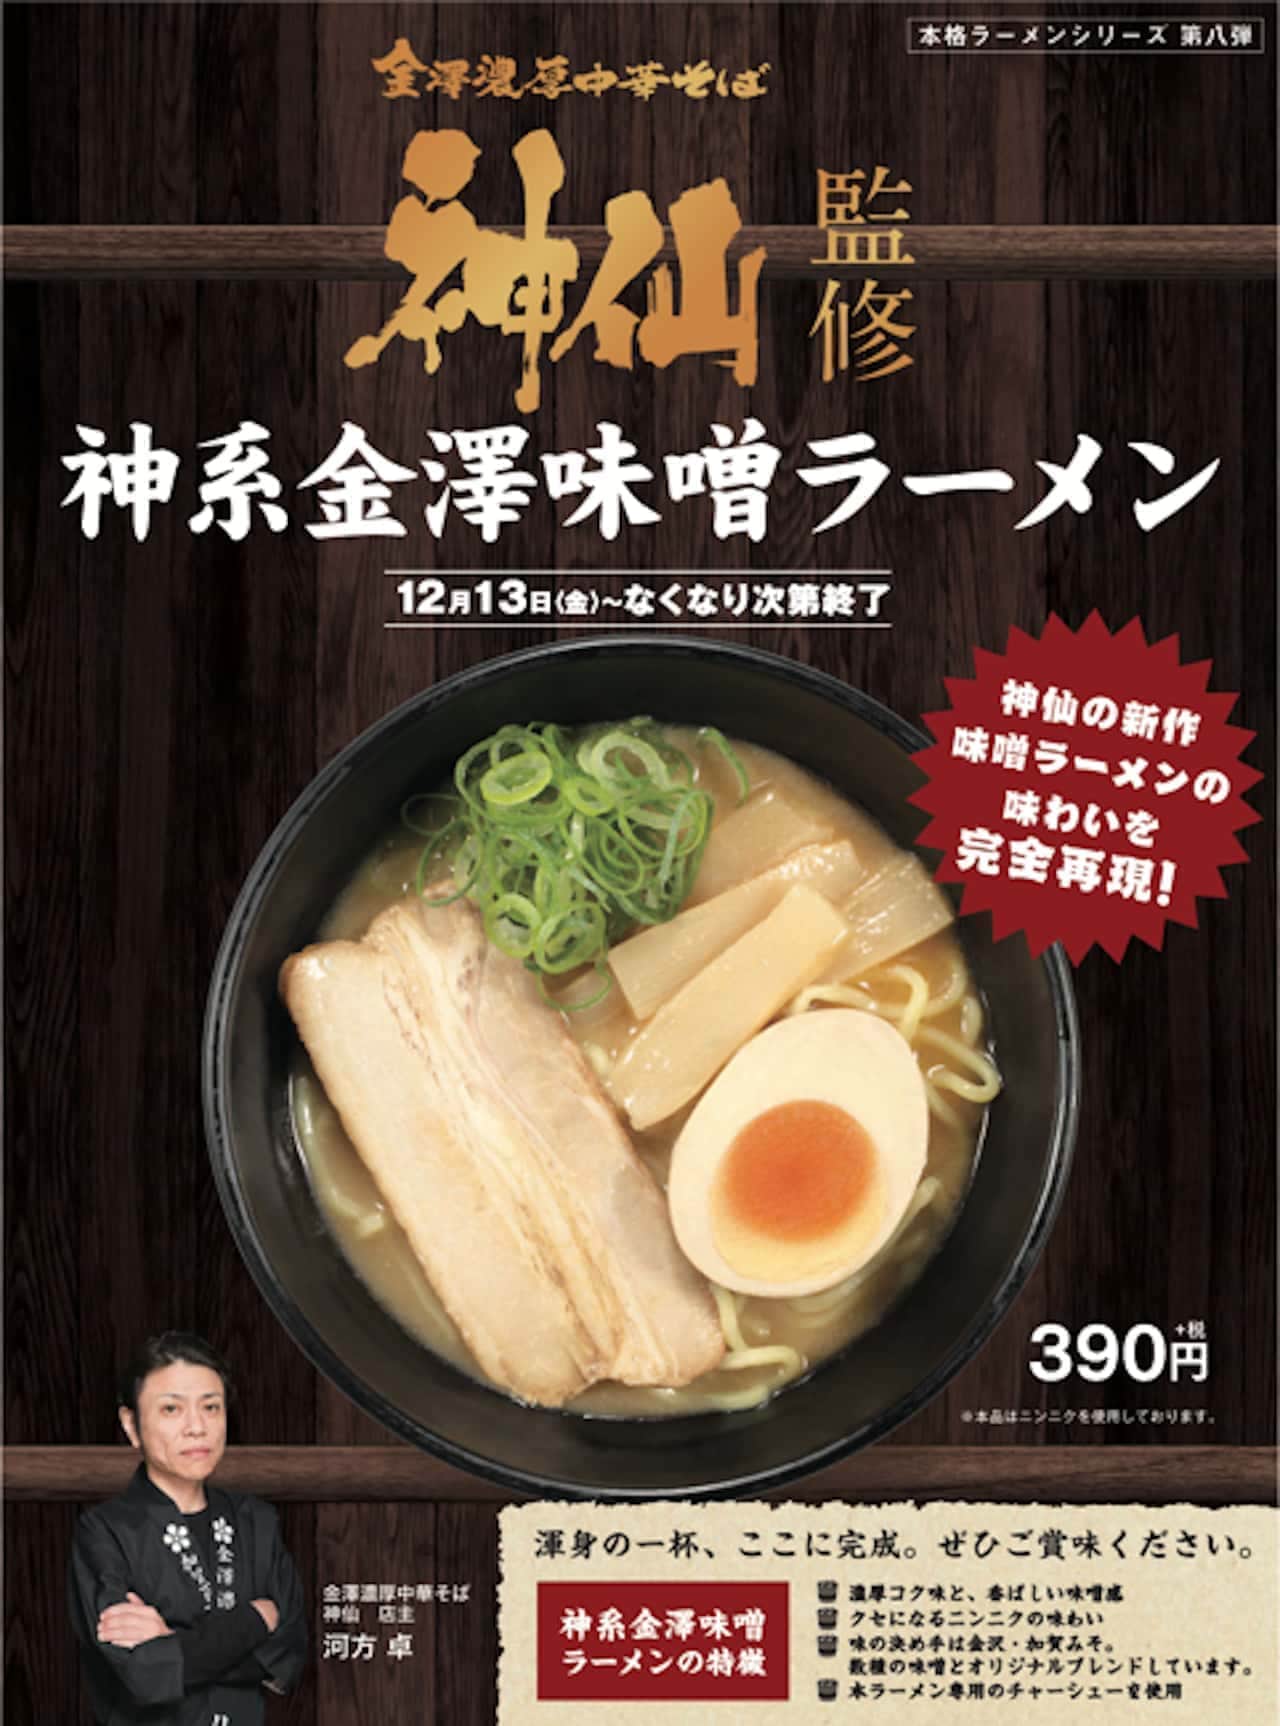 "Kanazawa Miso Ramen" supervised by "Kanazawa Rich Chinese Soba Shinsen" at Kappa Sushi